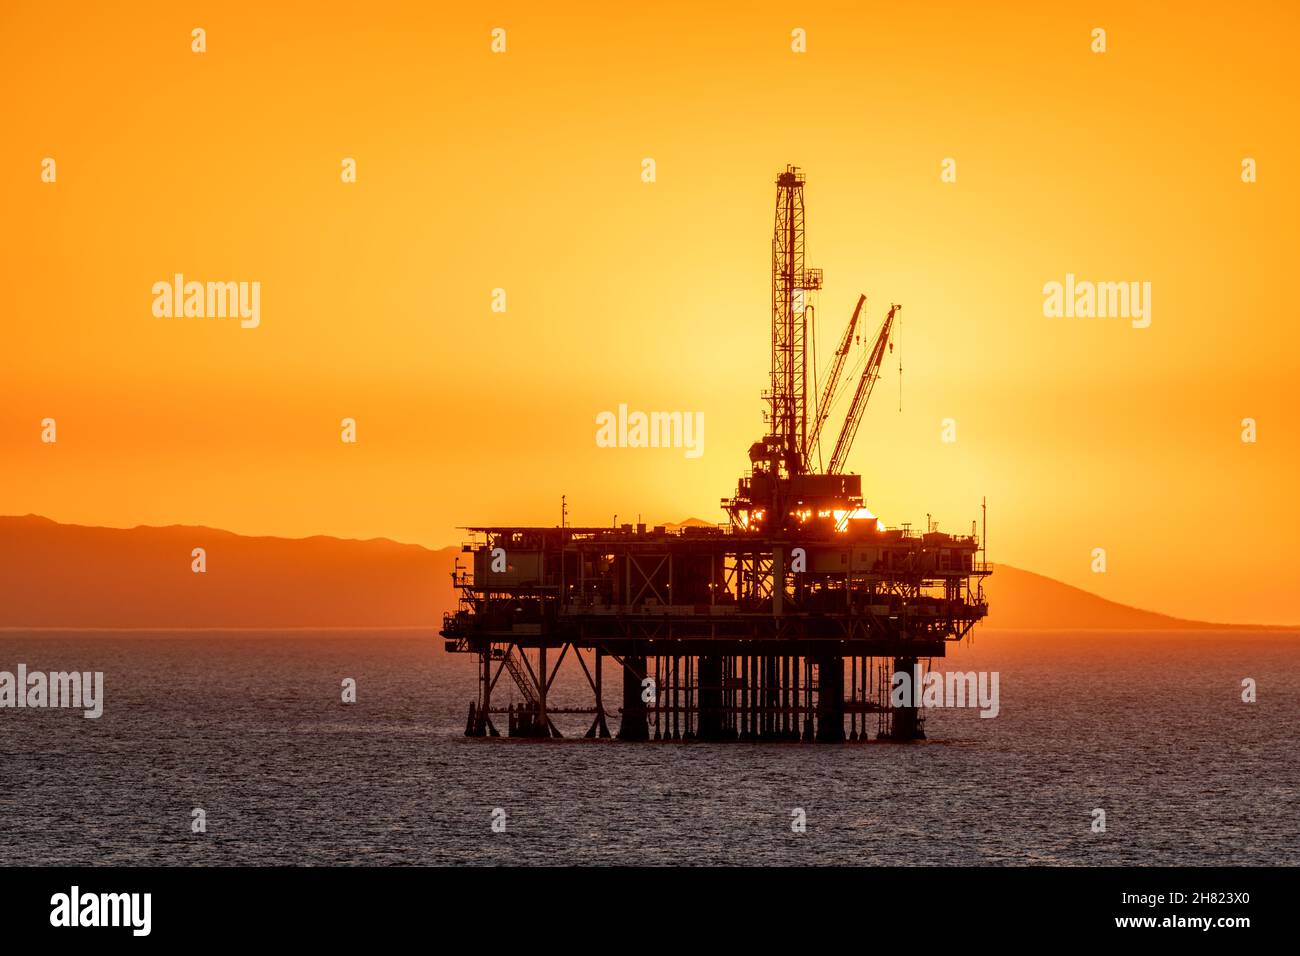 Offshore-Ölplattform vor der Küste Kaliforniens gegen einen launischen, orangen Himmel, wenn die Sonne hinter der Bohrinsel untergeht. Stockfoto